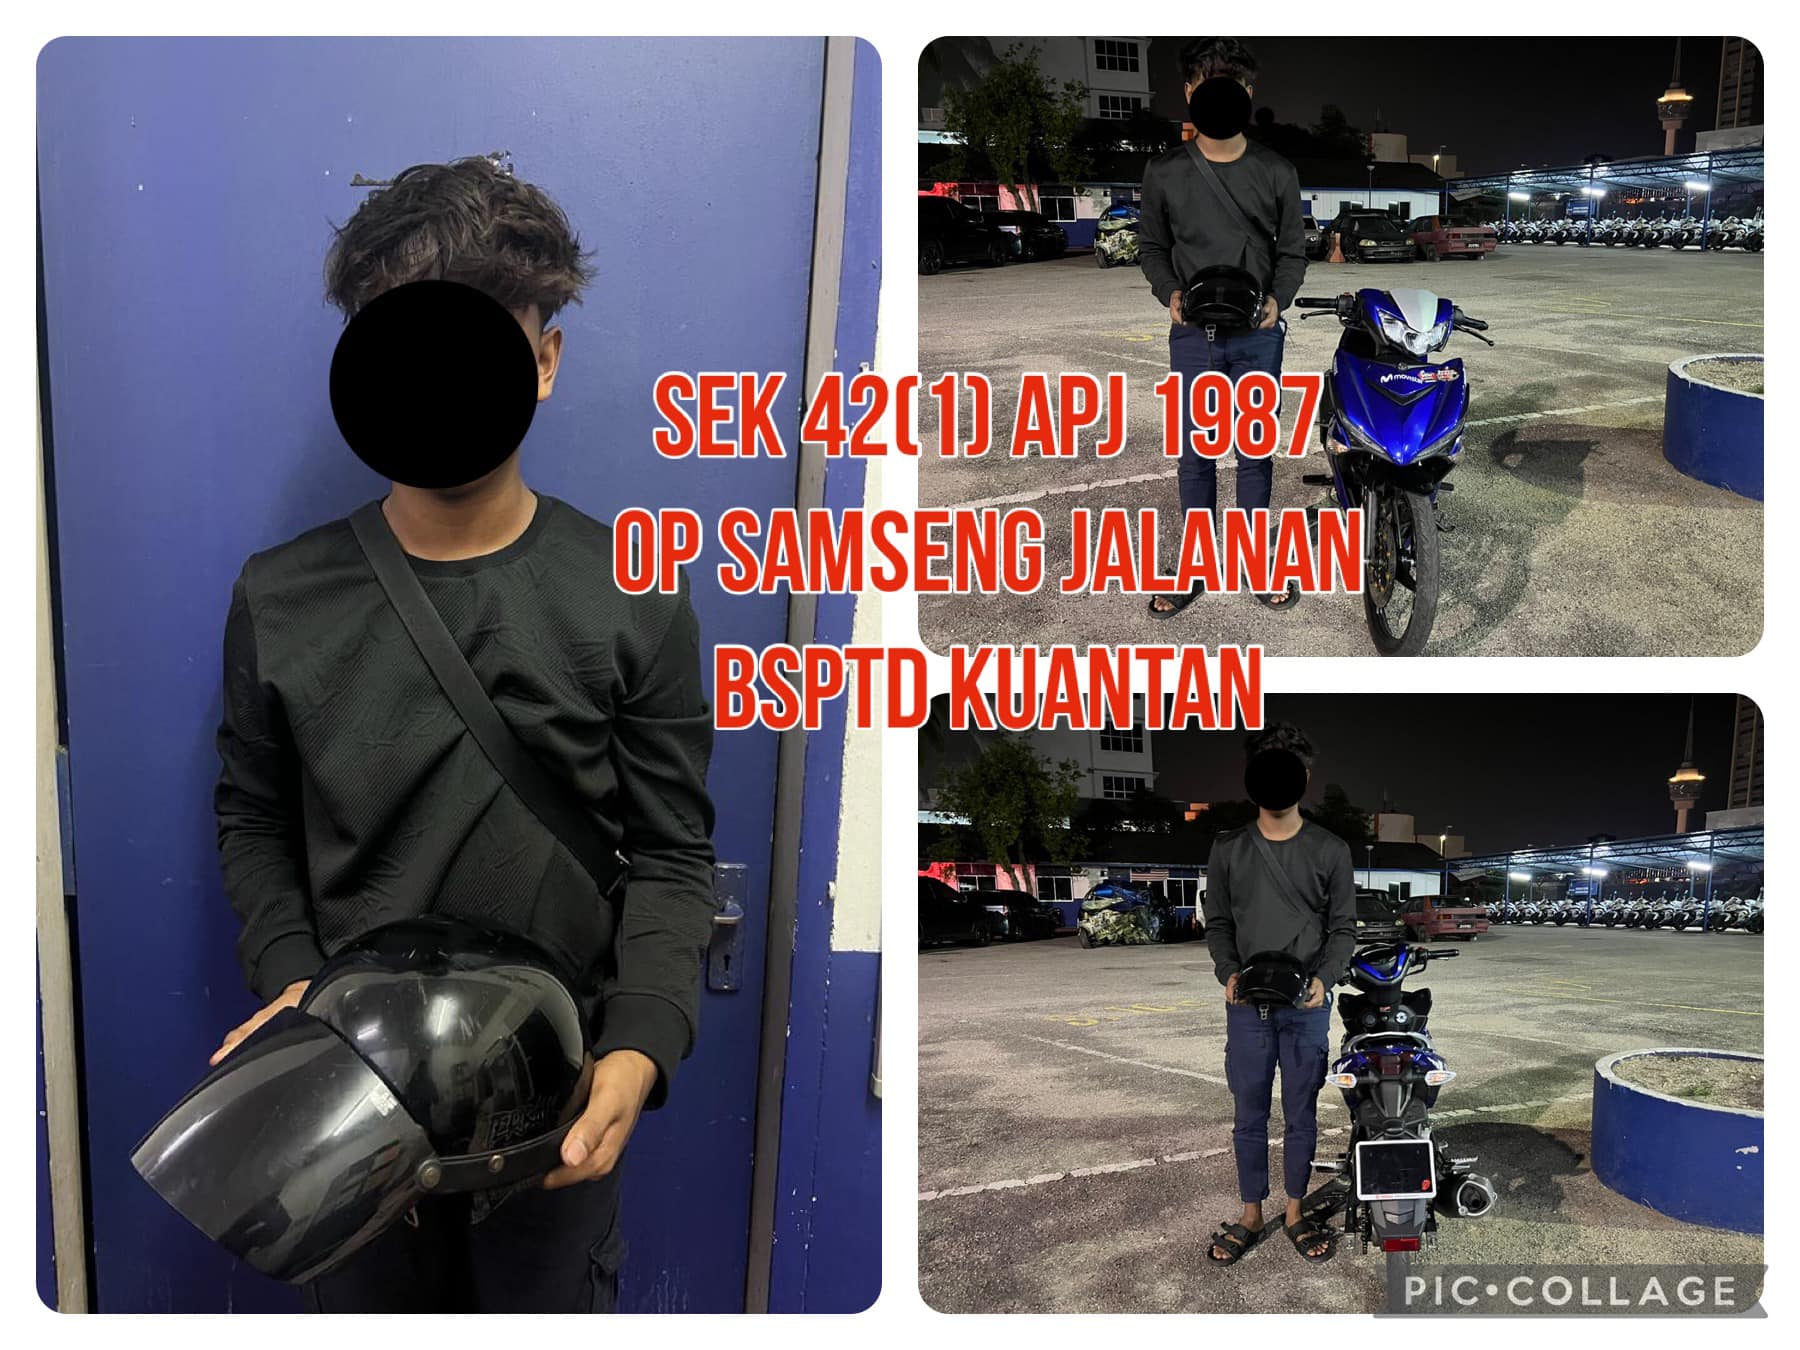 M'sian teen arrested for doing 'wheelie' stunt